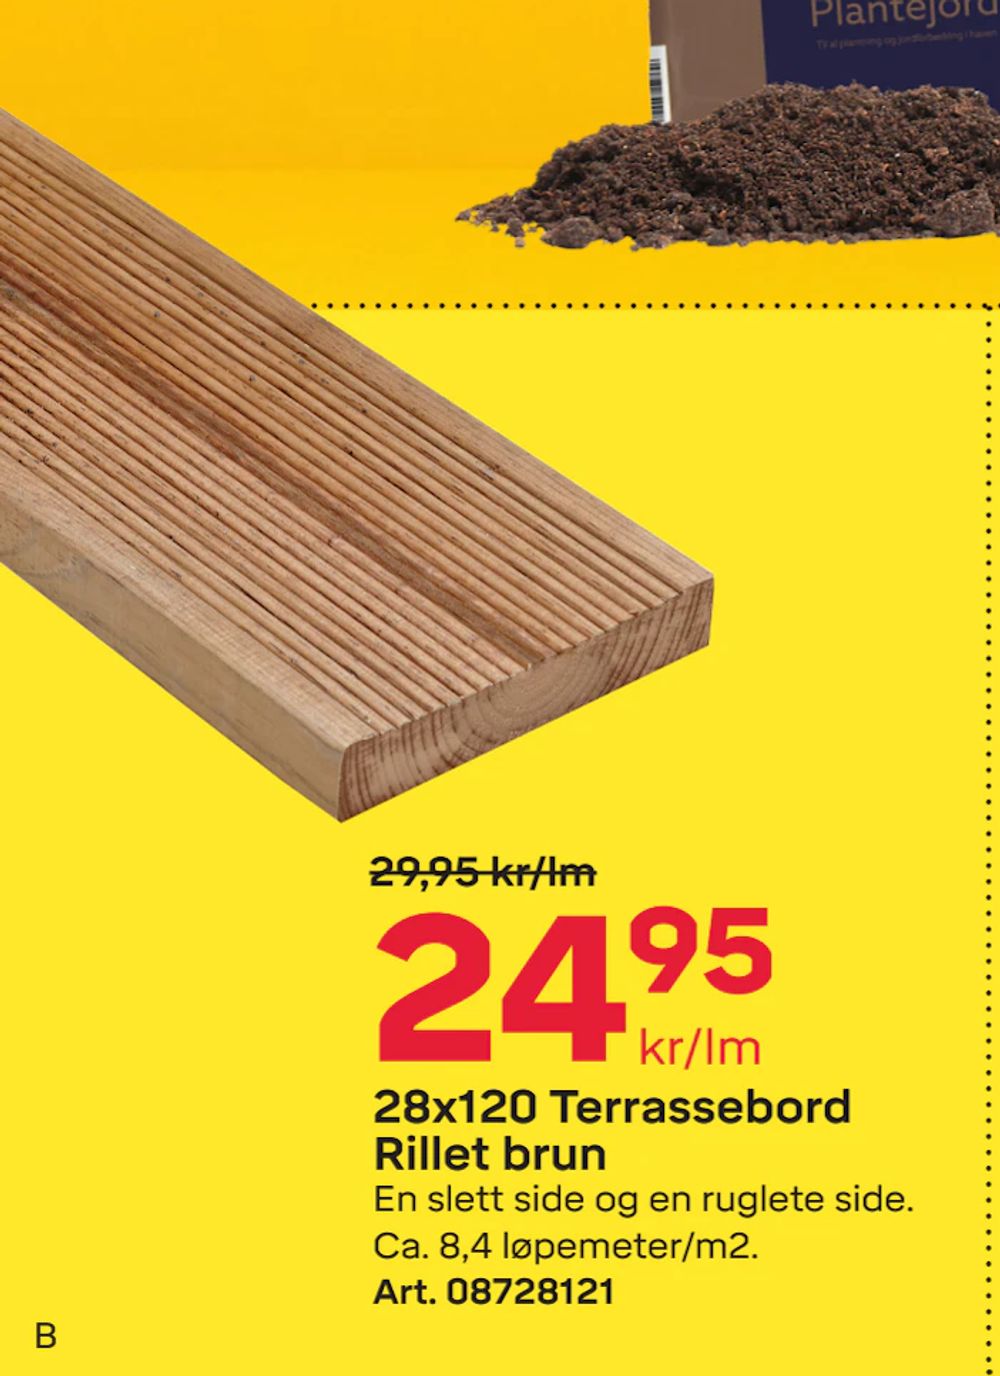 Tilbud på 28x120 Terrassebord Rillet brun fra Byggmax til 24,95 kr